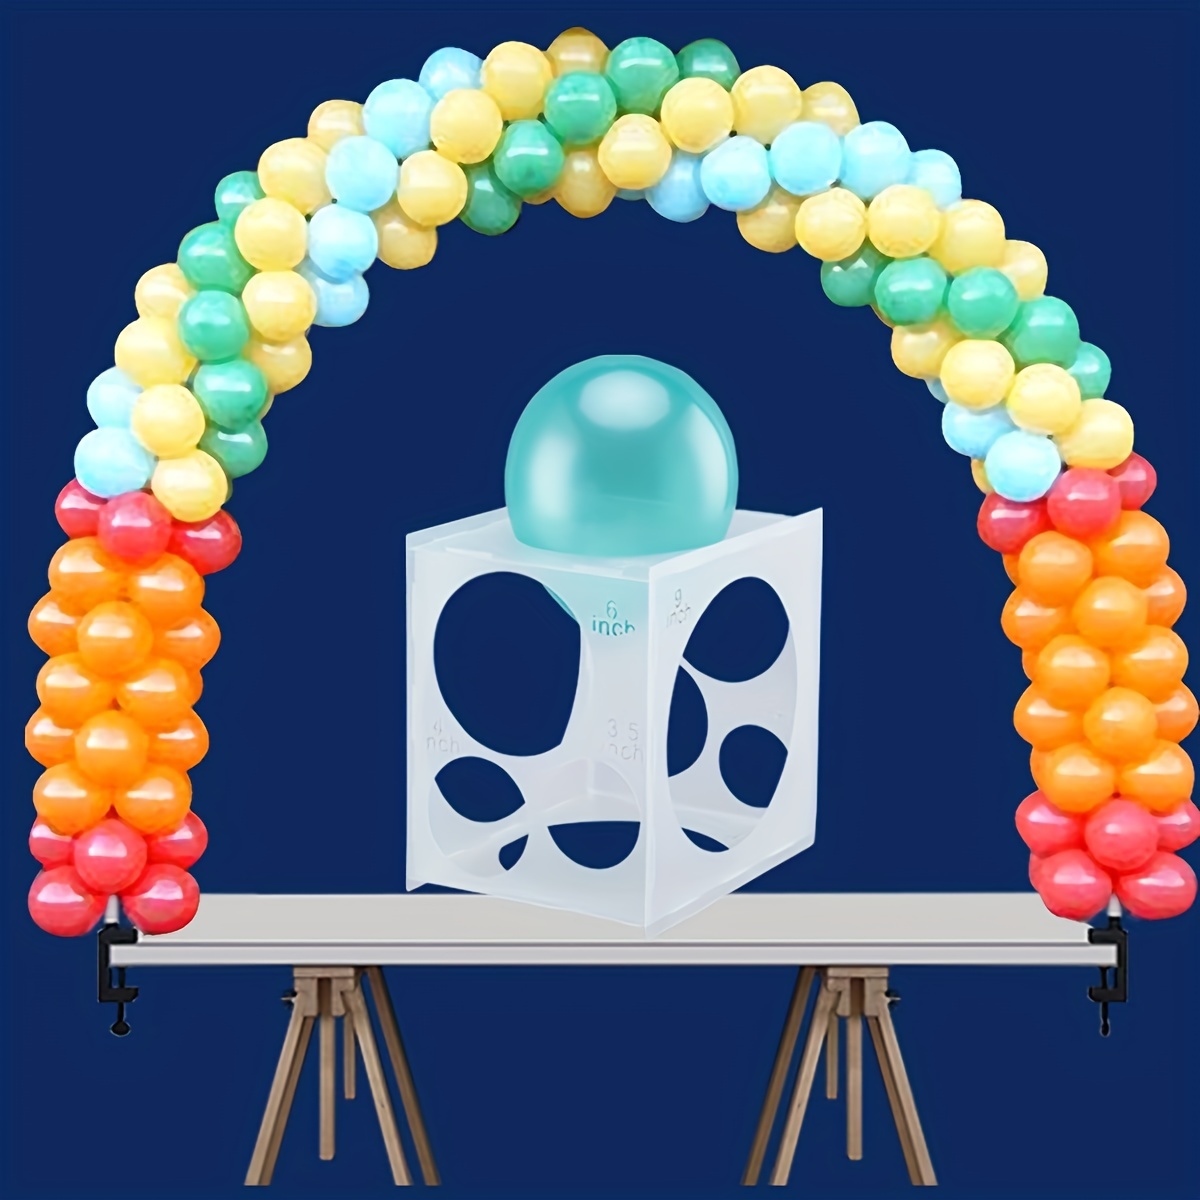  Medidor de globos de 11 agujeros, herramienta de medición de  caja de cubo para decoración de globos, caja de tamaño de globos, calibrador  de globos con punto de pegamento para globos